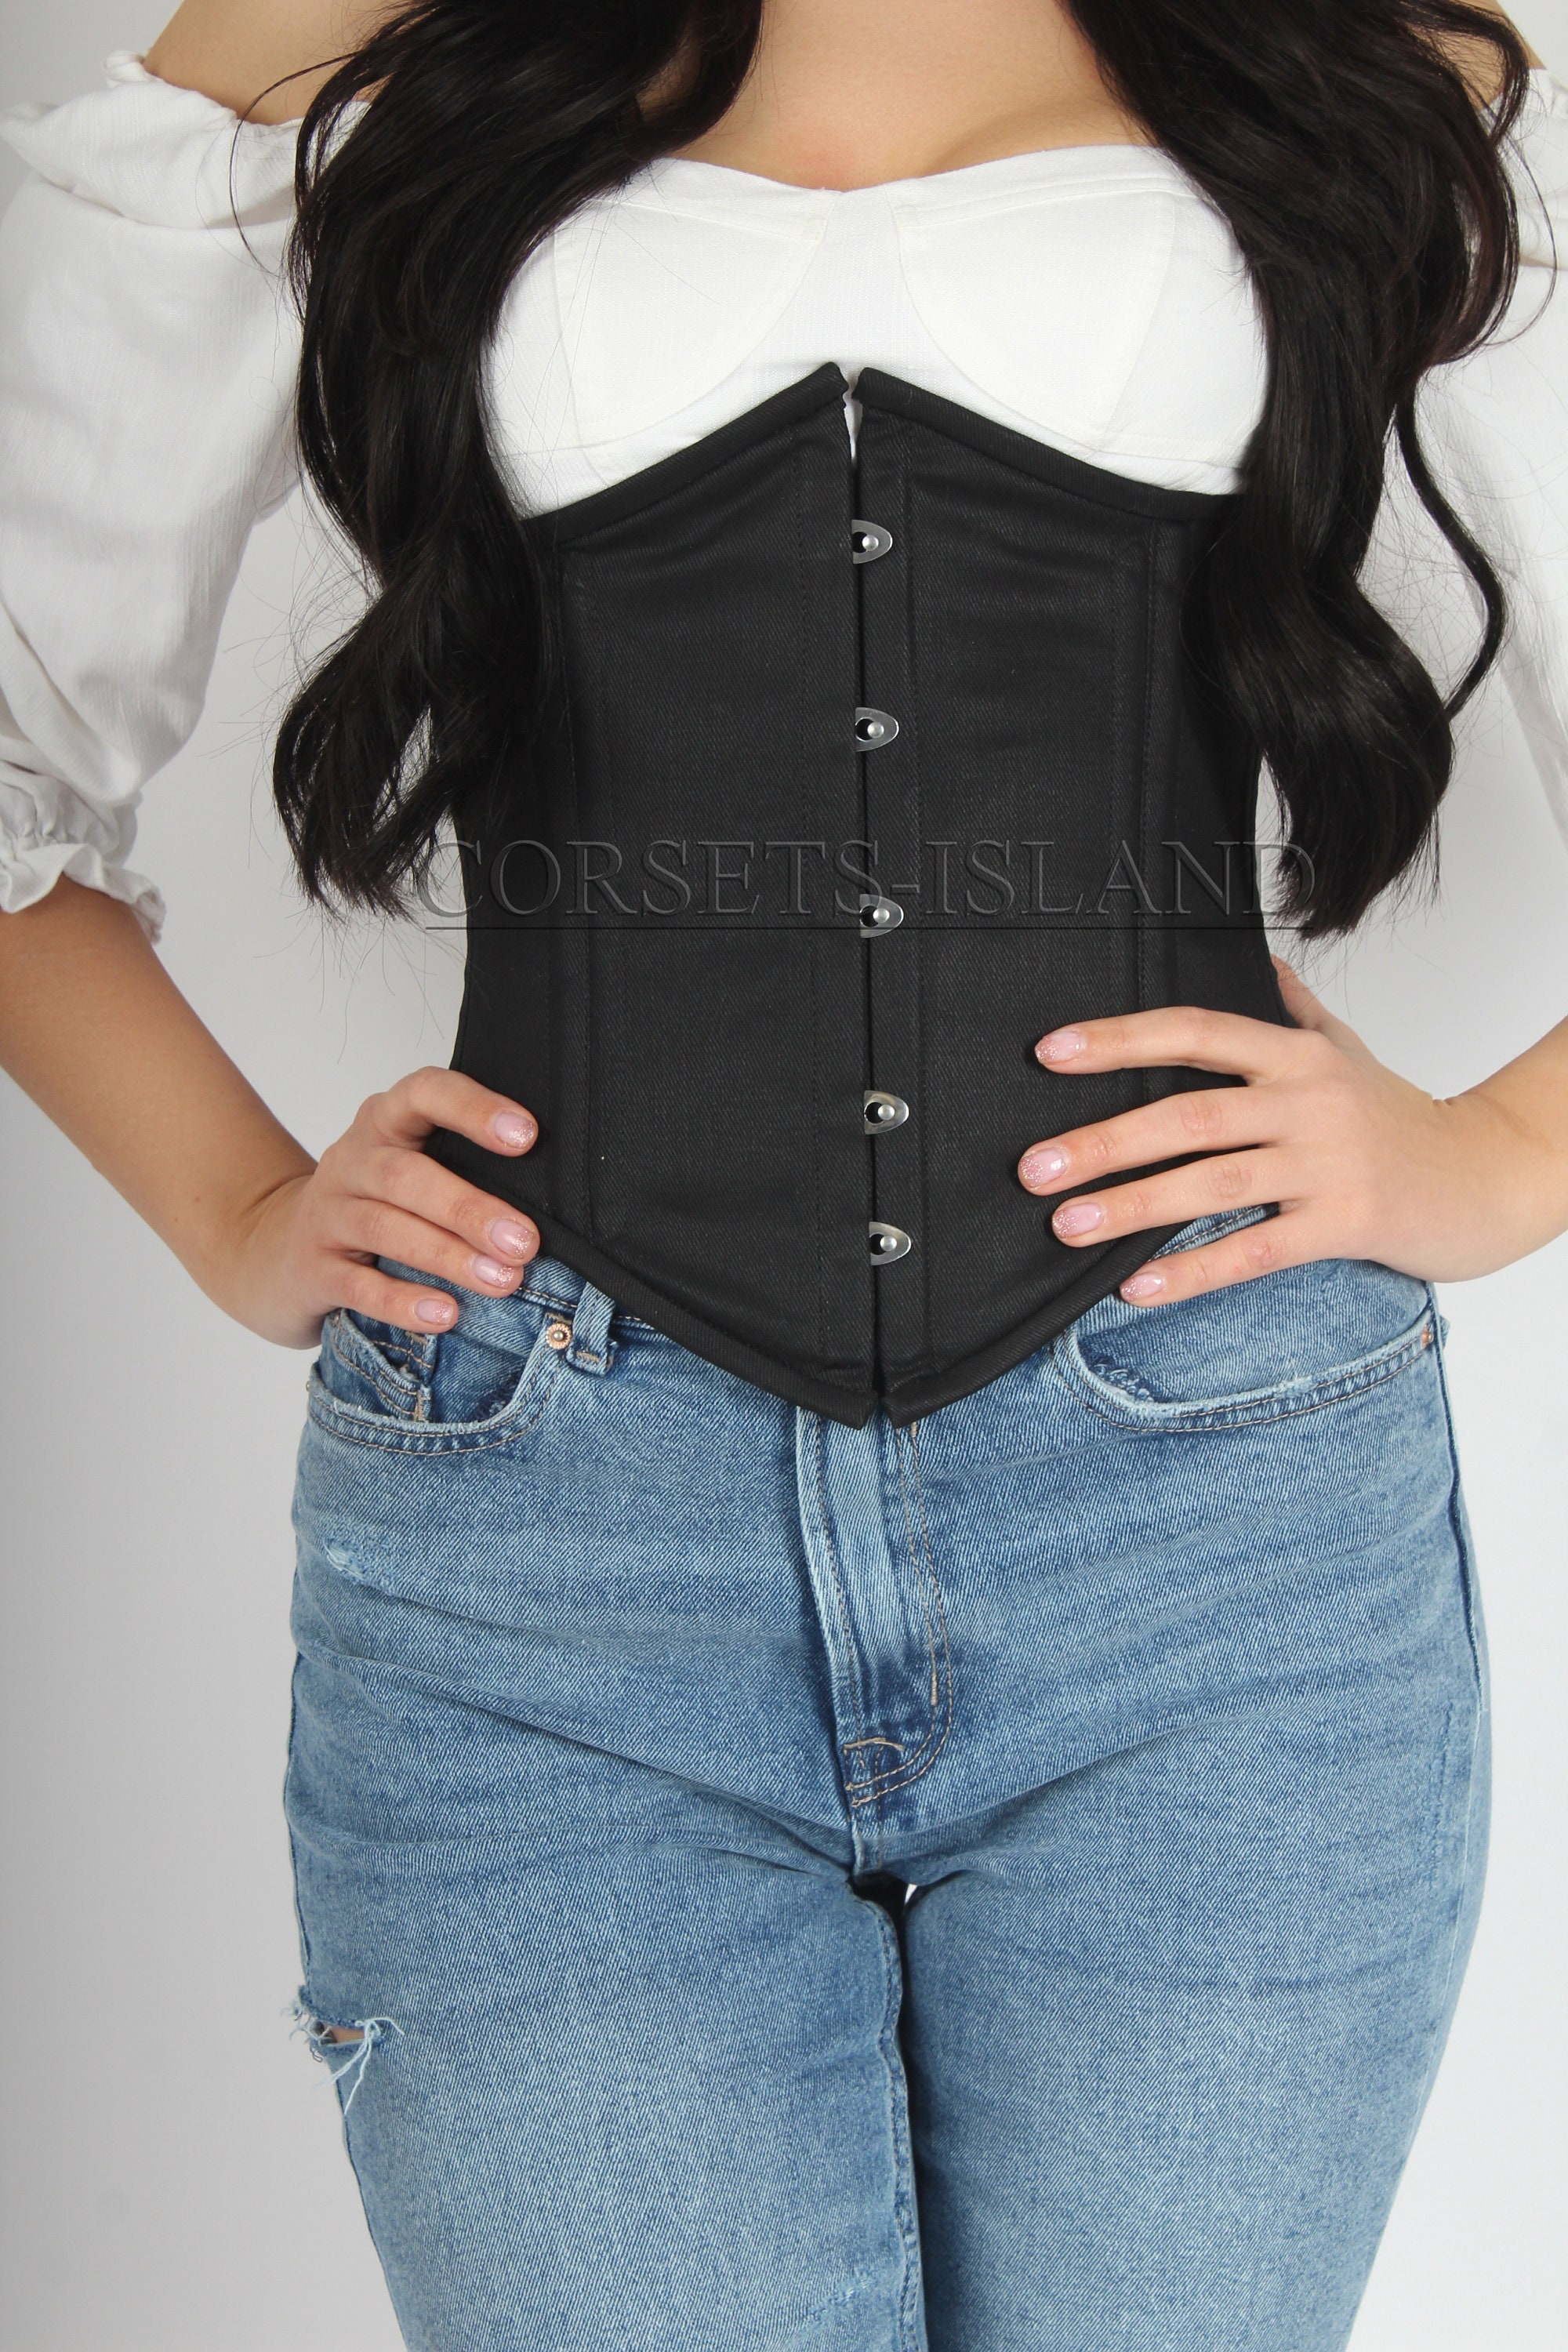  Plus Size Women's Halter Corset Tops Vintage Vest